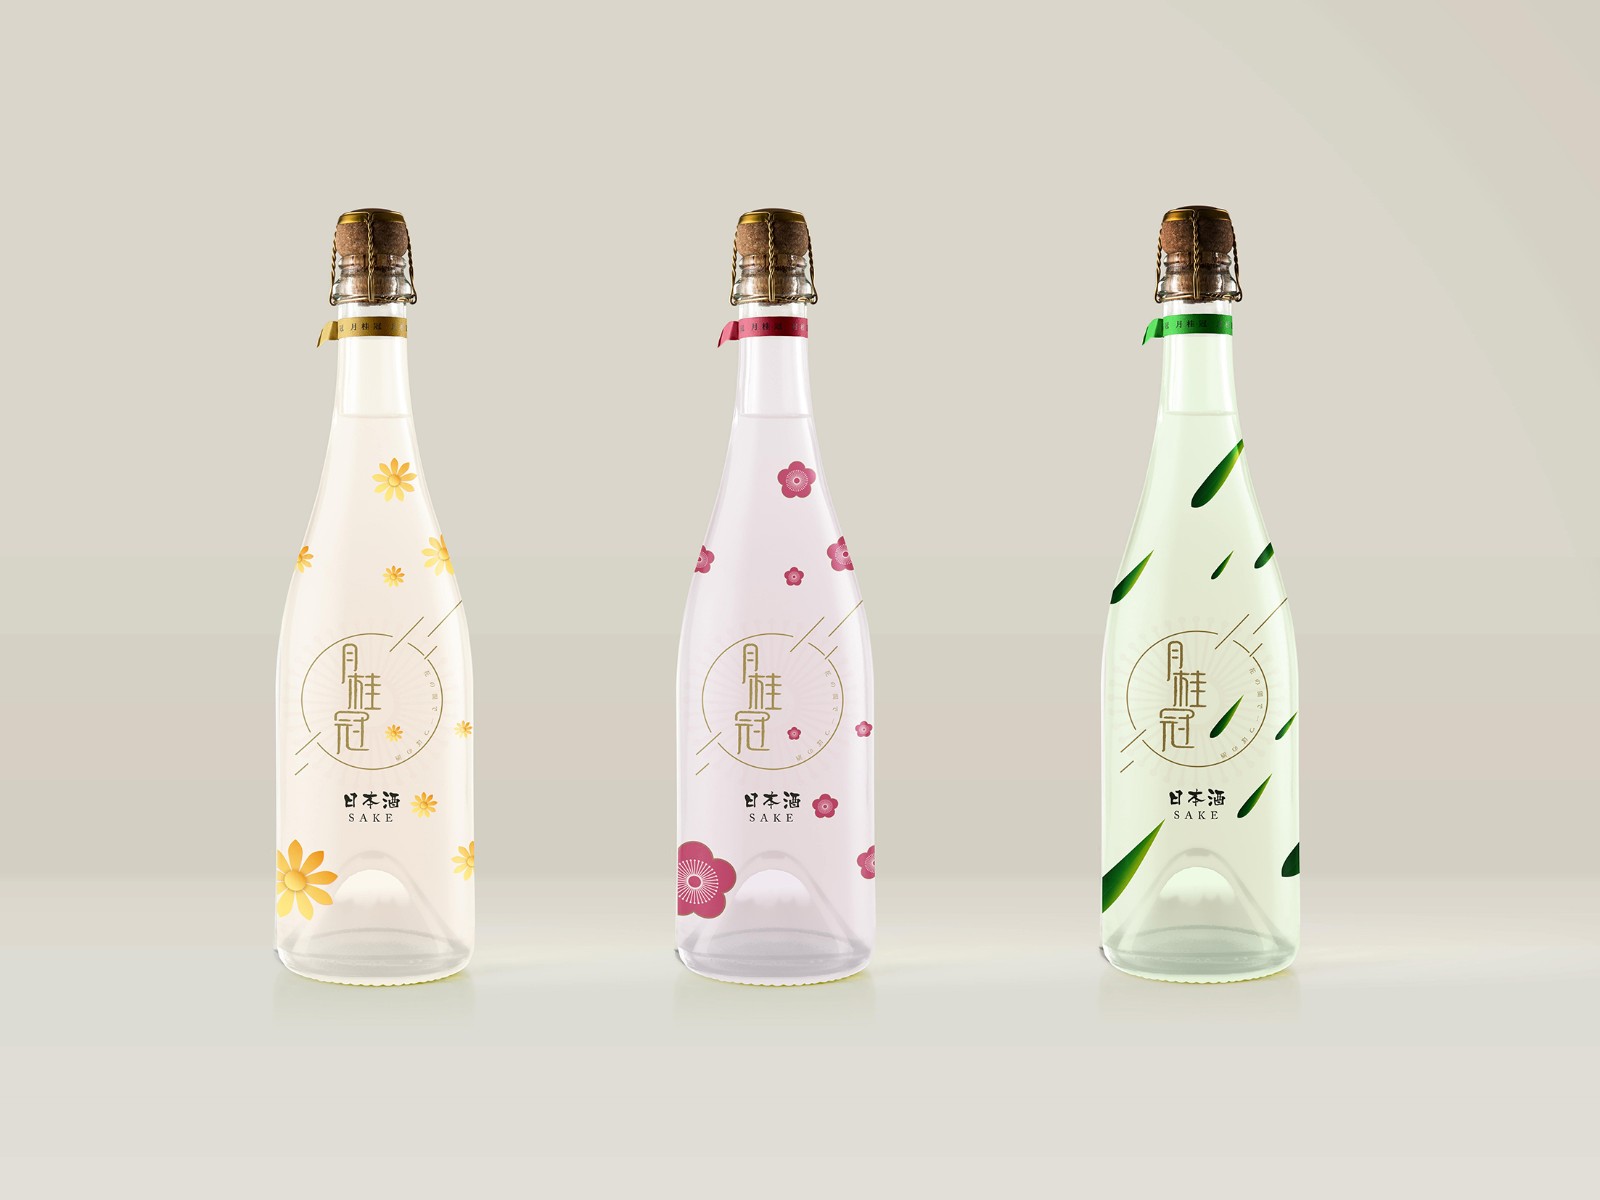 日本酒包装设计案例欣赏 古柏广告设计